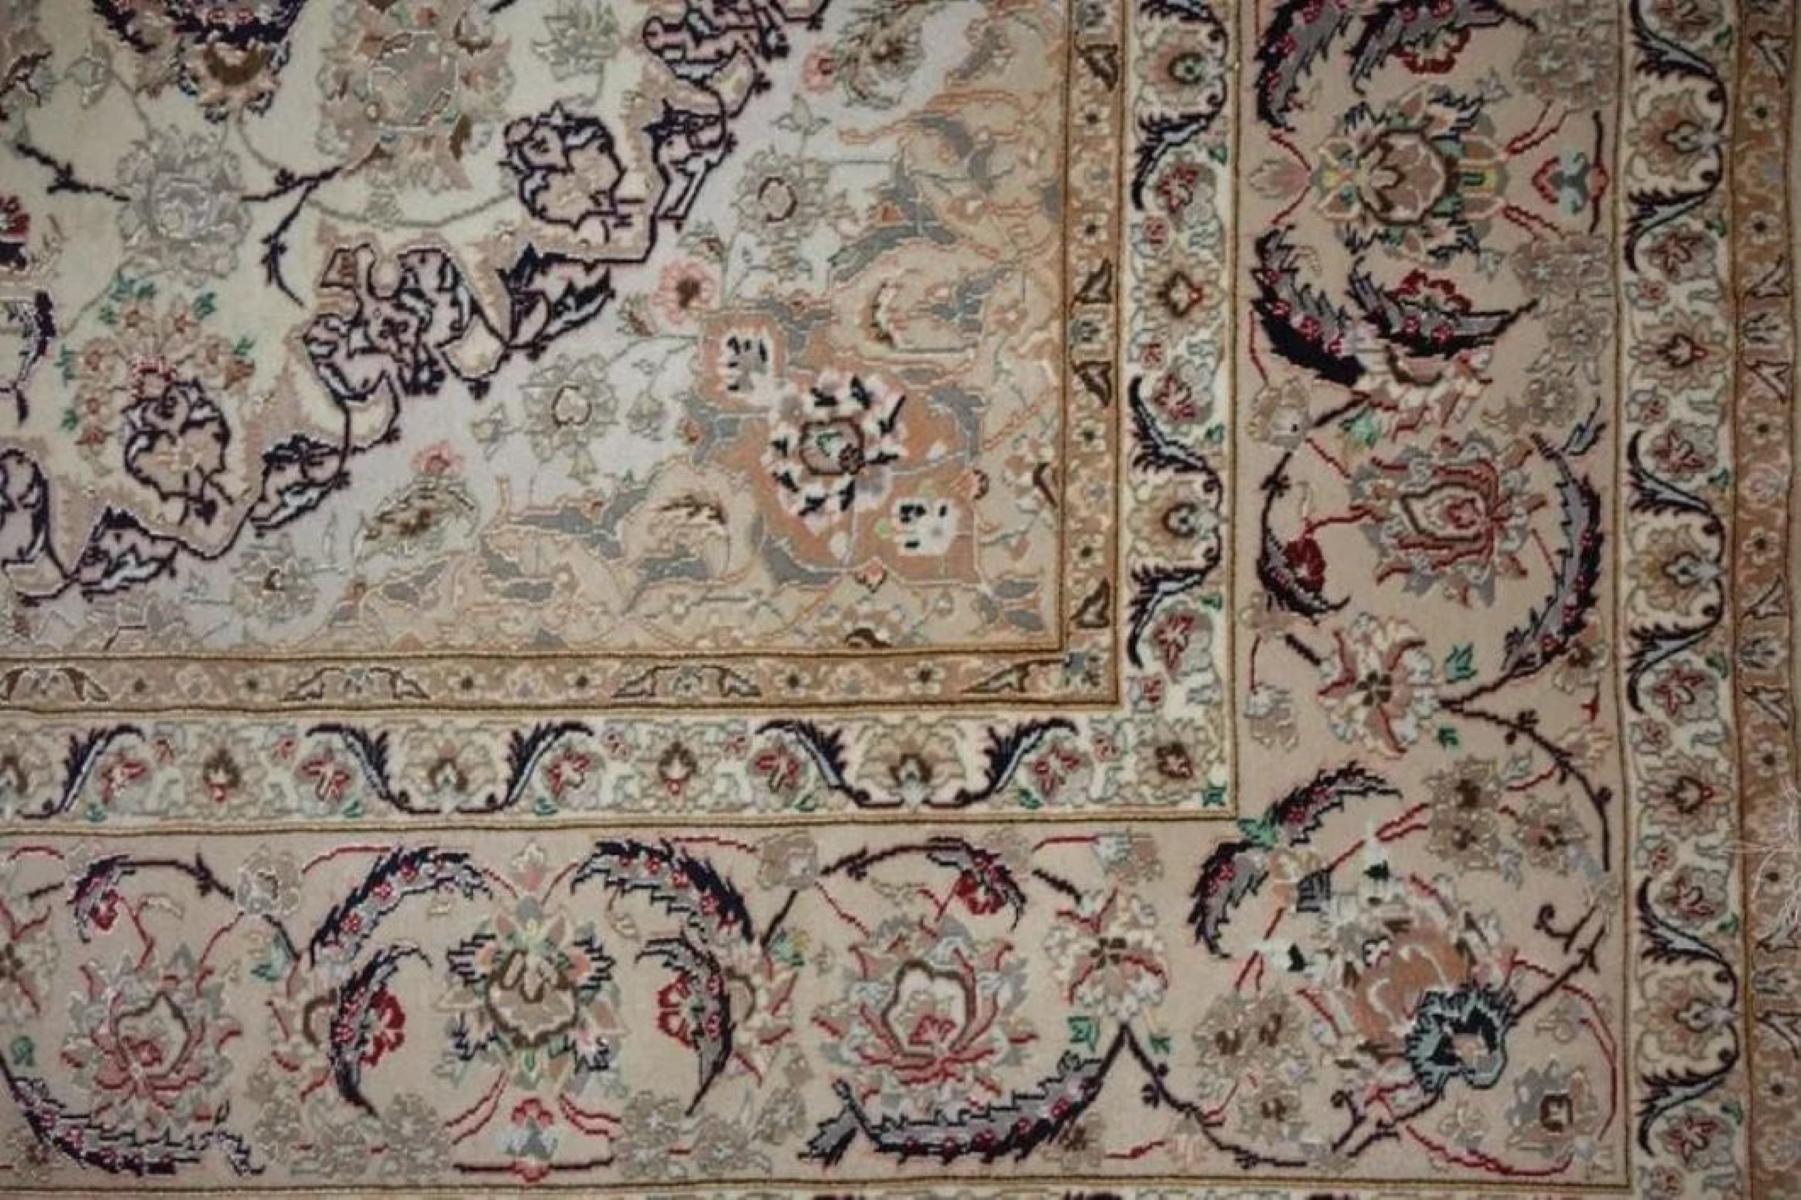 Très beau tapis persan Isfahan 600 noeuds par pouce, taille 11.6 x 8.4 Iran Isfahan Enishri Laine et Soie avec une fondation en soie. Environ 8 000 000 de nœuds noués à la main, un par un. Il faut 5 ans pour réaliser cette œuvre d'art.